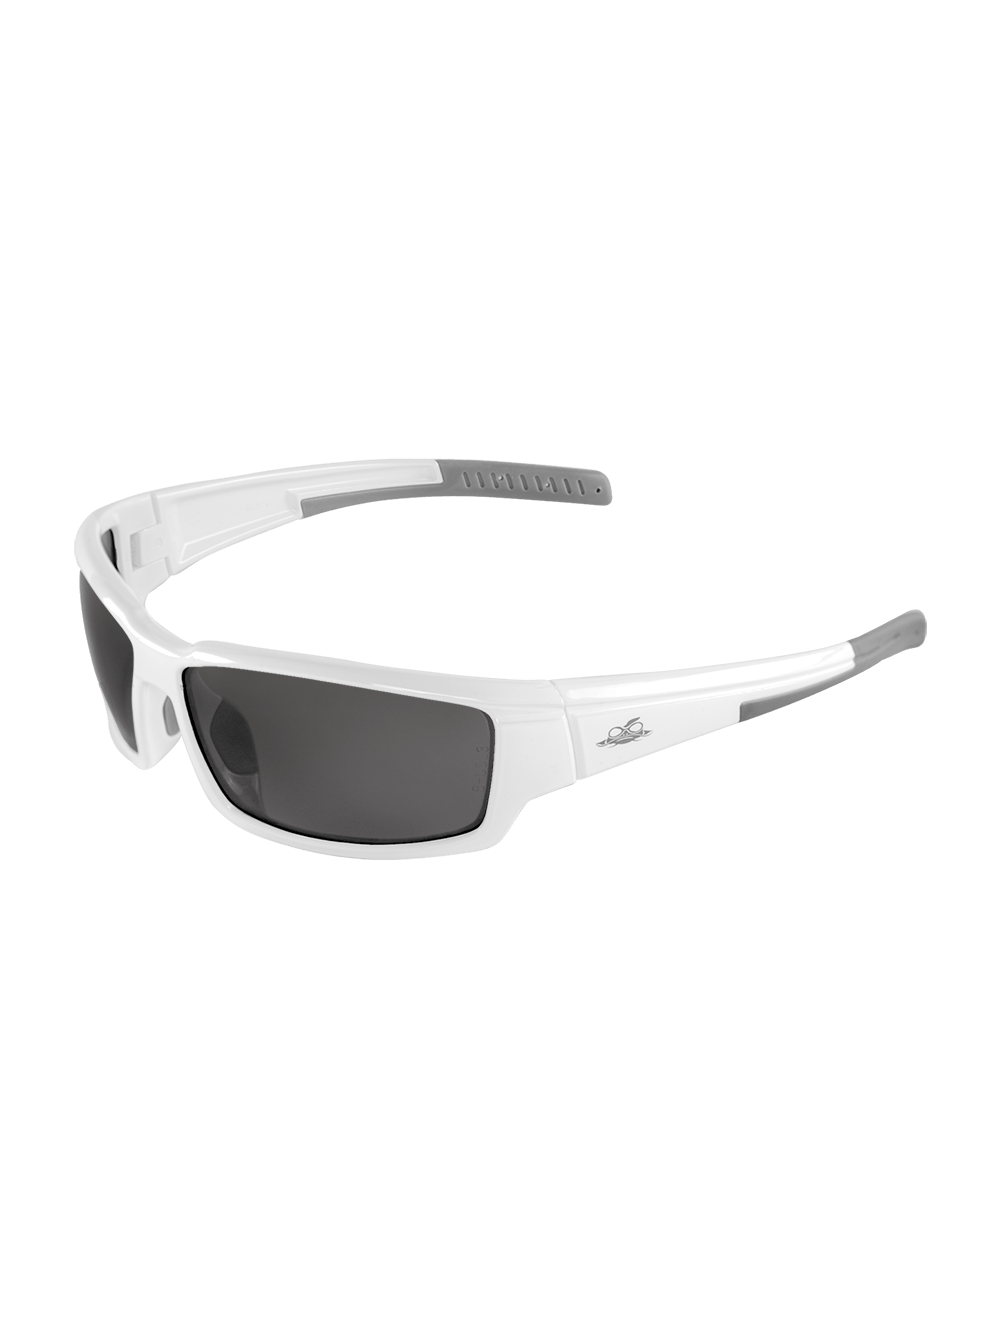 Maki® Smoke Anti-Fog Lens, Shiny White Frame Safety Glasses - BH14183AF